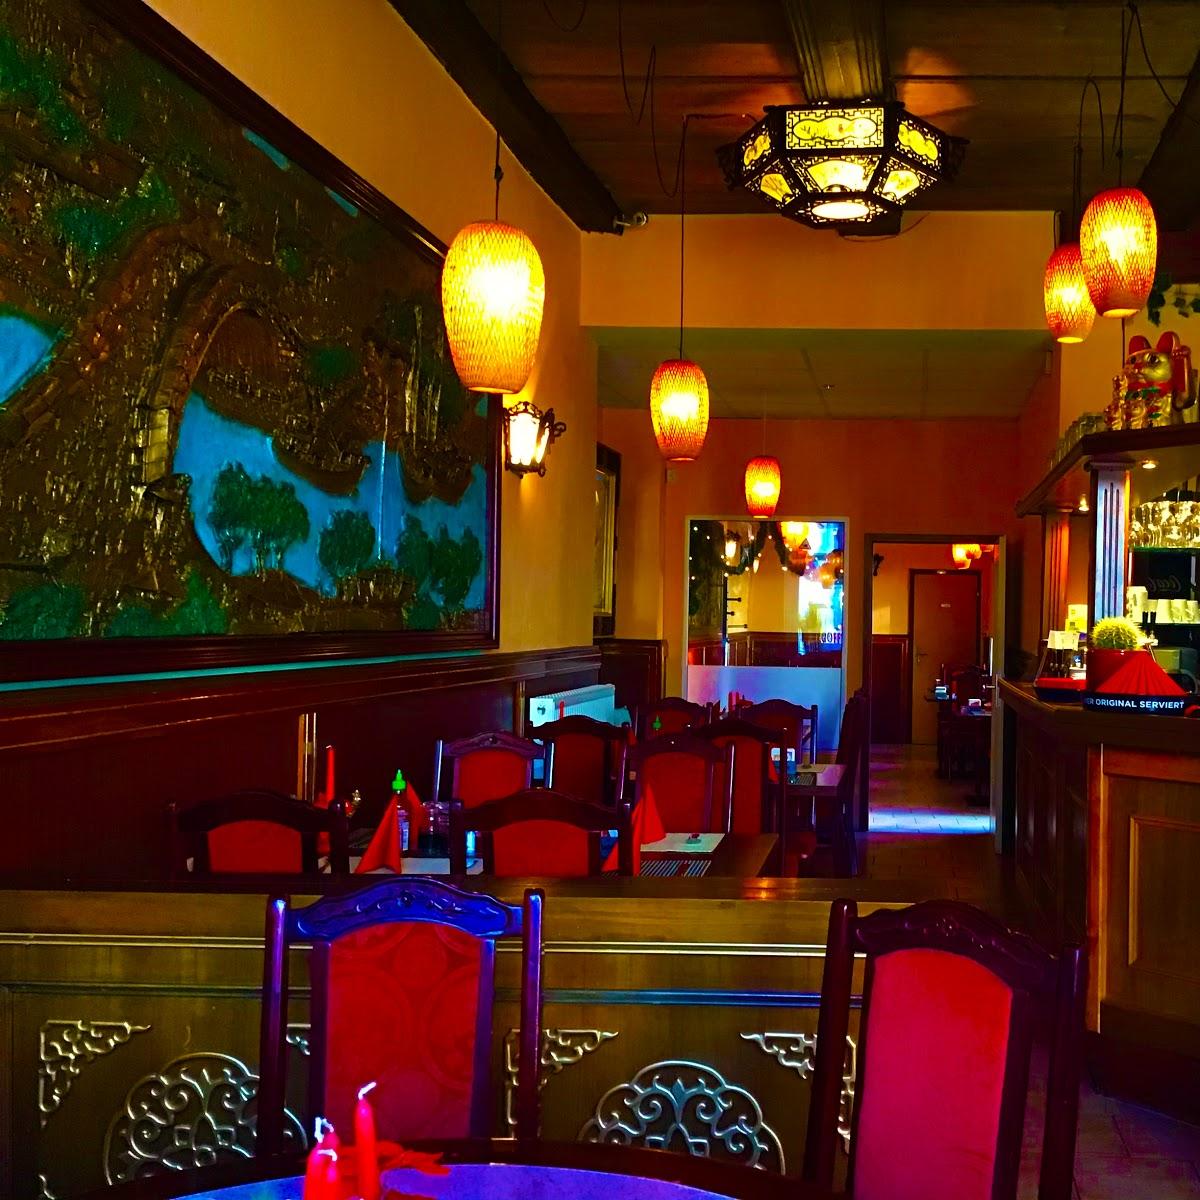 Restaurant "Saigon Restaurant" in Finsterwalde